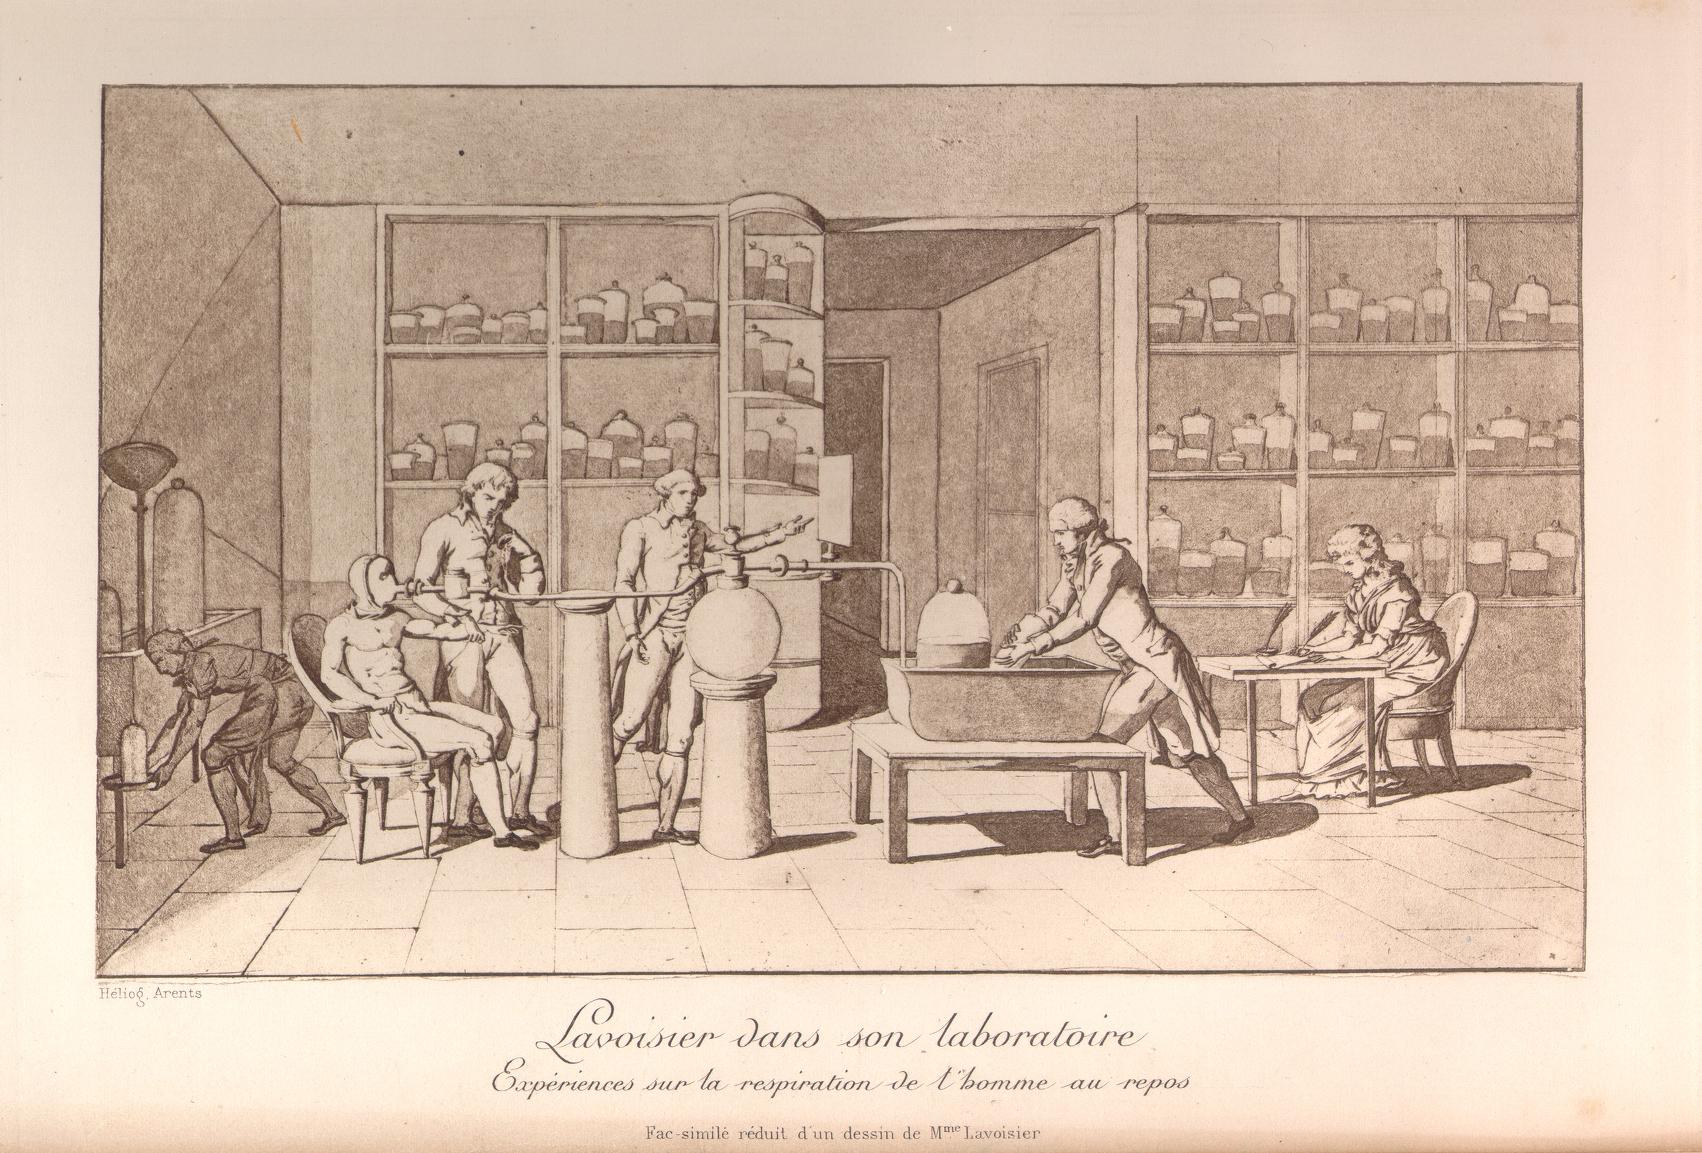 Landmark Events — History Highlight — Antoine-Laurent Lavoisier Born, 1743